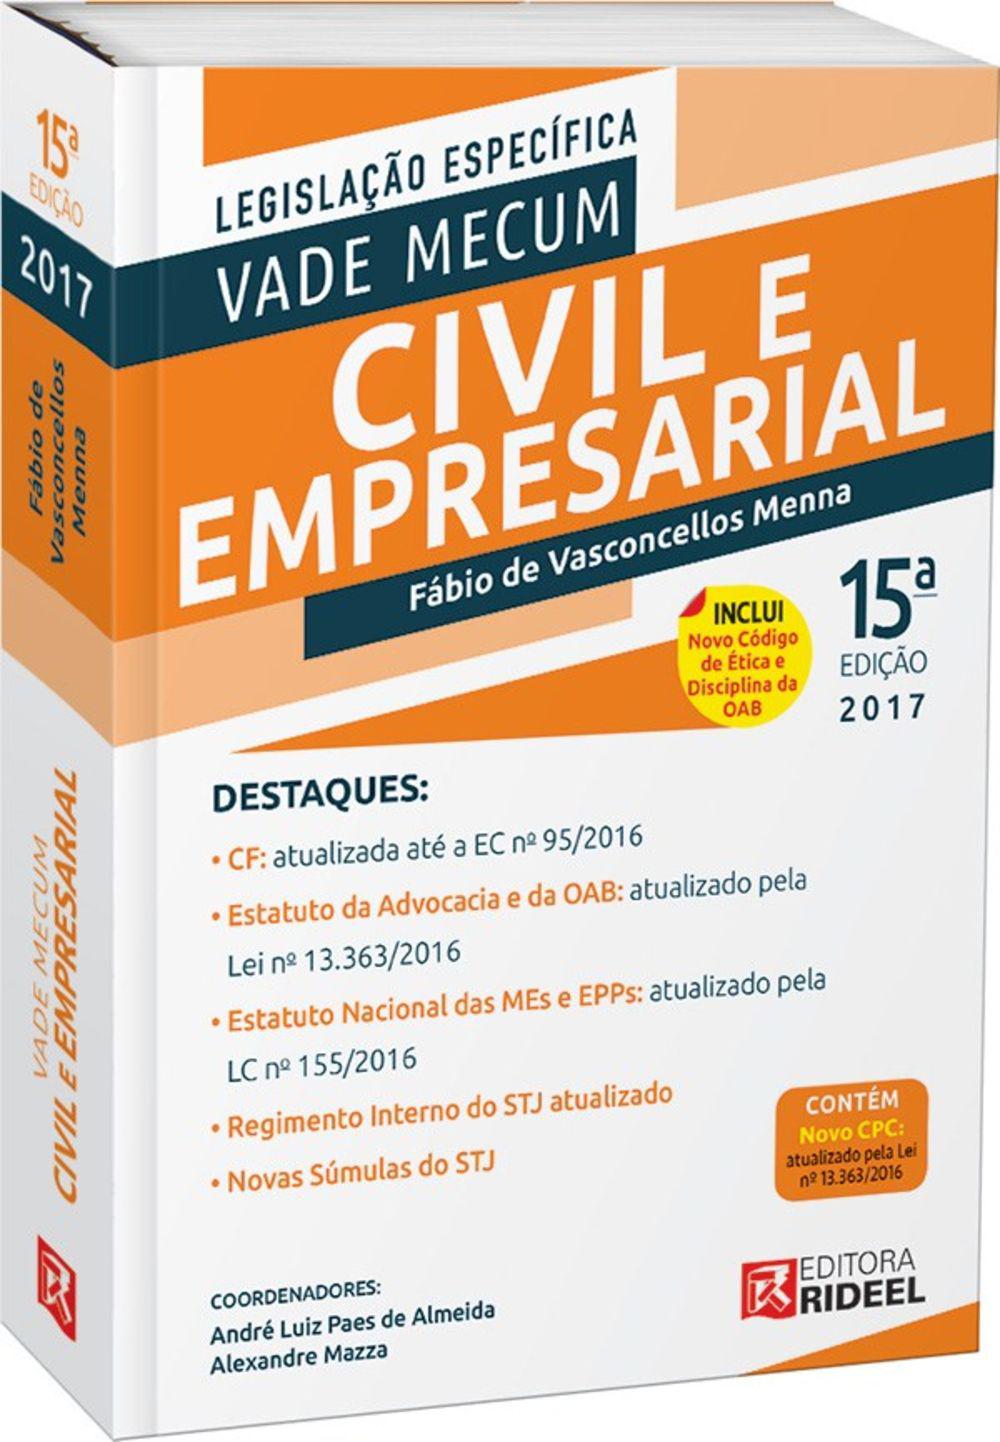 Vade Mecum Civil E Empresarial - 15ª Edição 2017 é bom? Vale a pena?